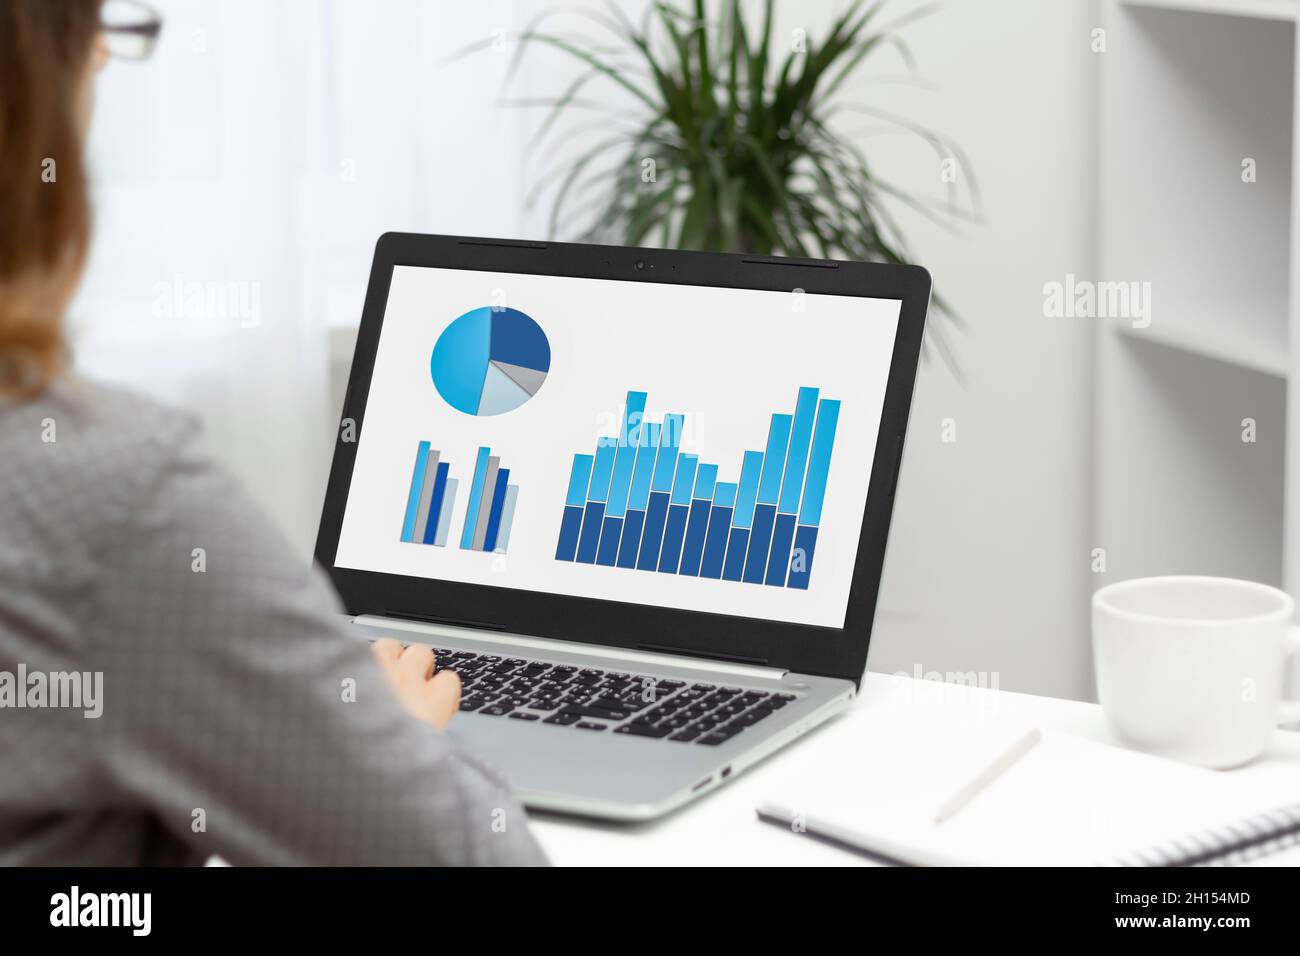 Business Woman analyse les rapports statistiques.Graphiques et diagrammes financiers sur l'écran de l'ordinateur portable. Banque D'Images